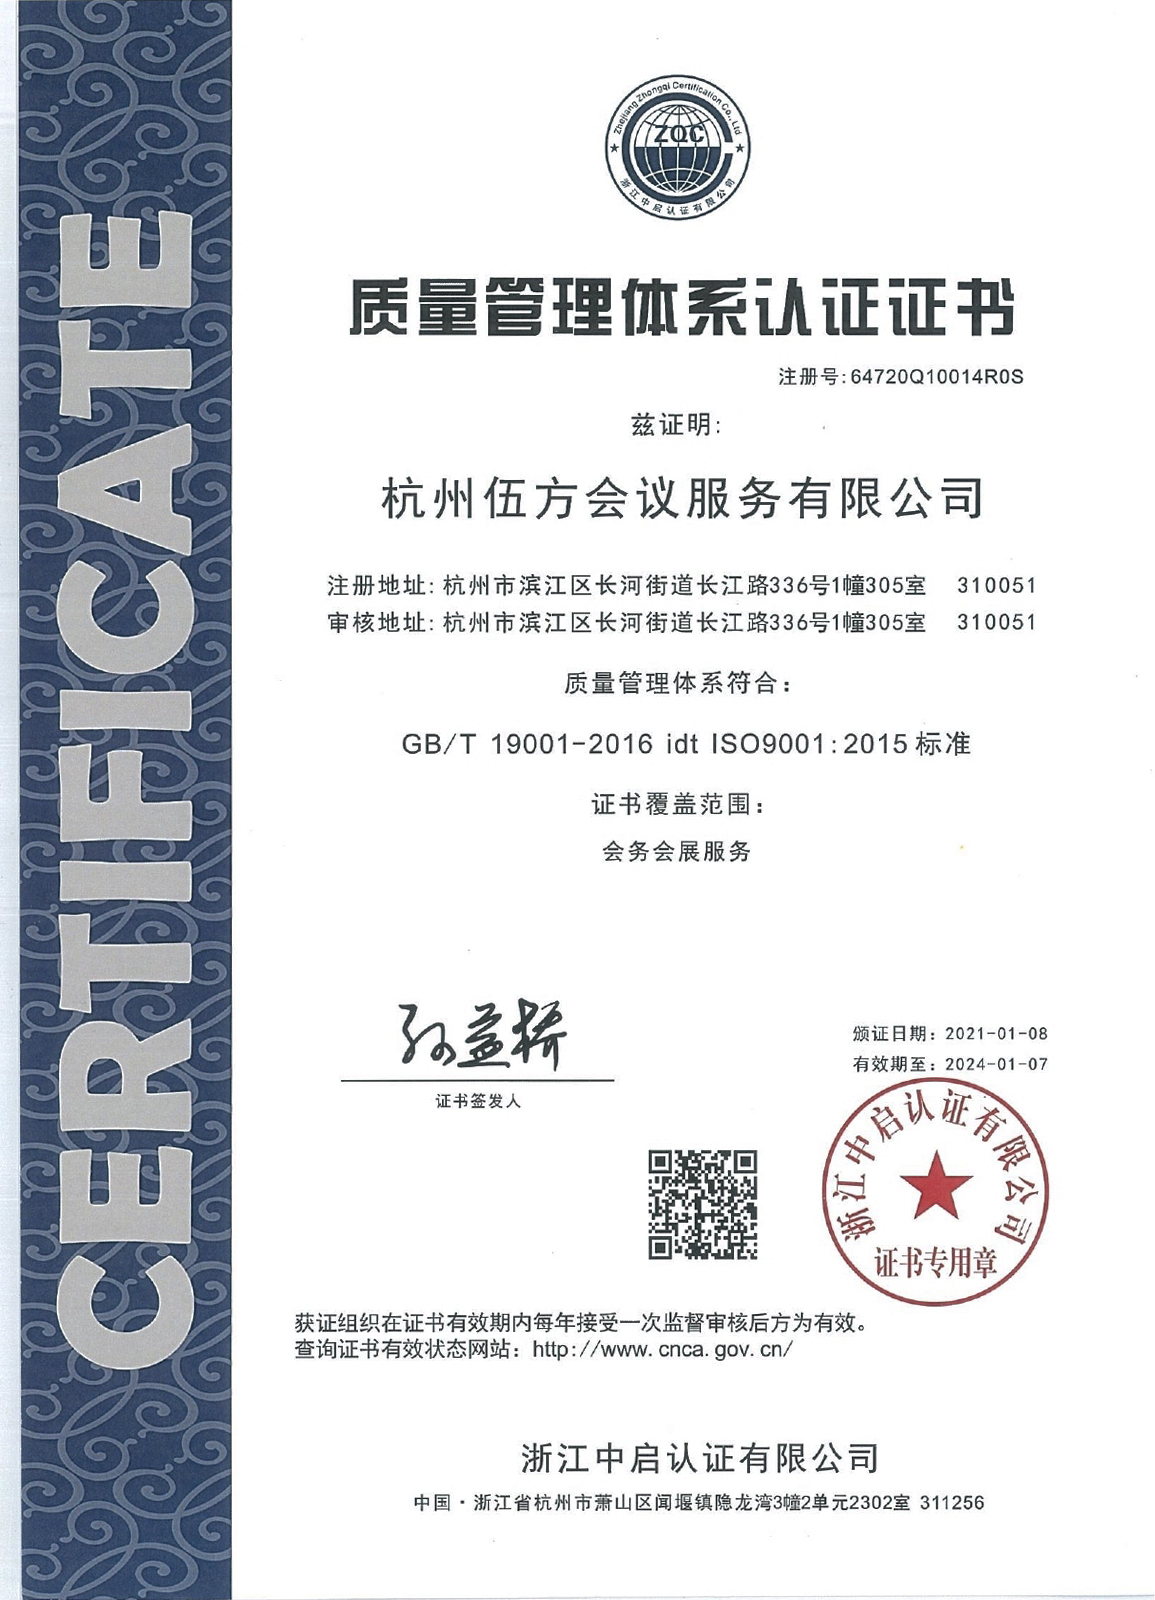 伍方会议 ISO9001:2015 质量管理体系认证证书-1